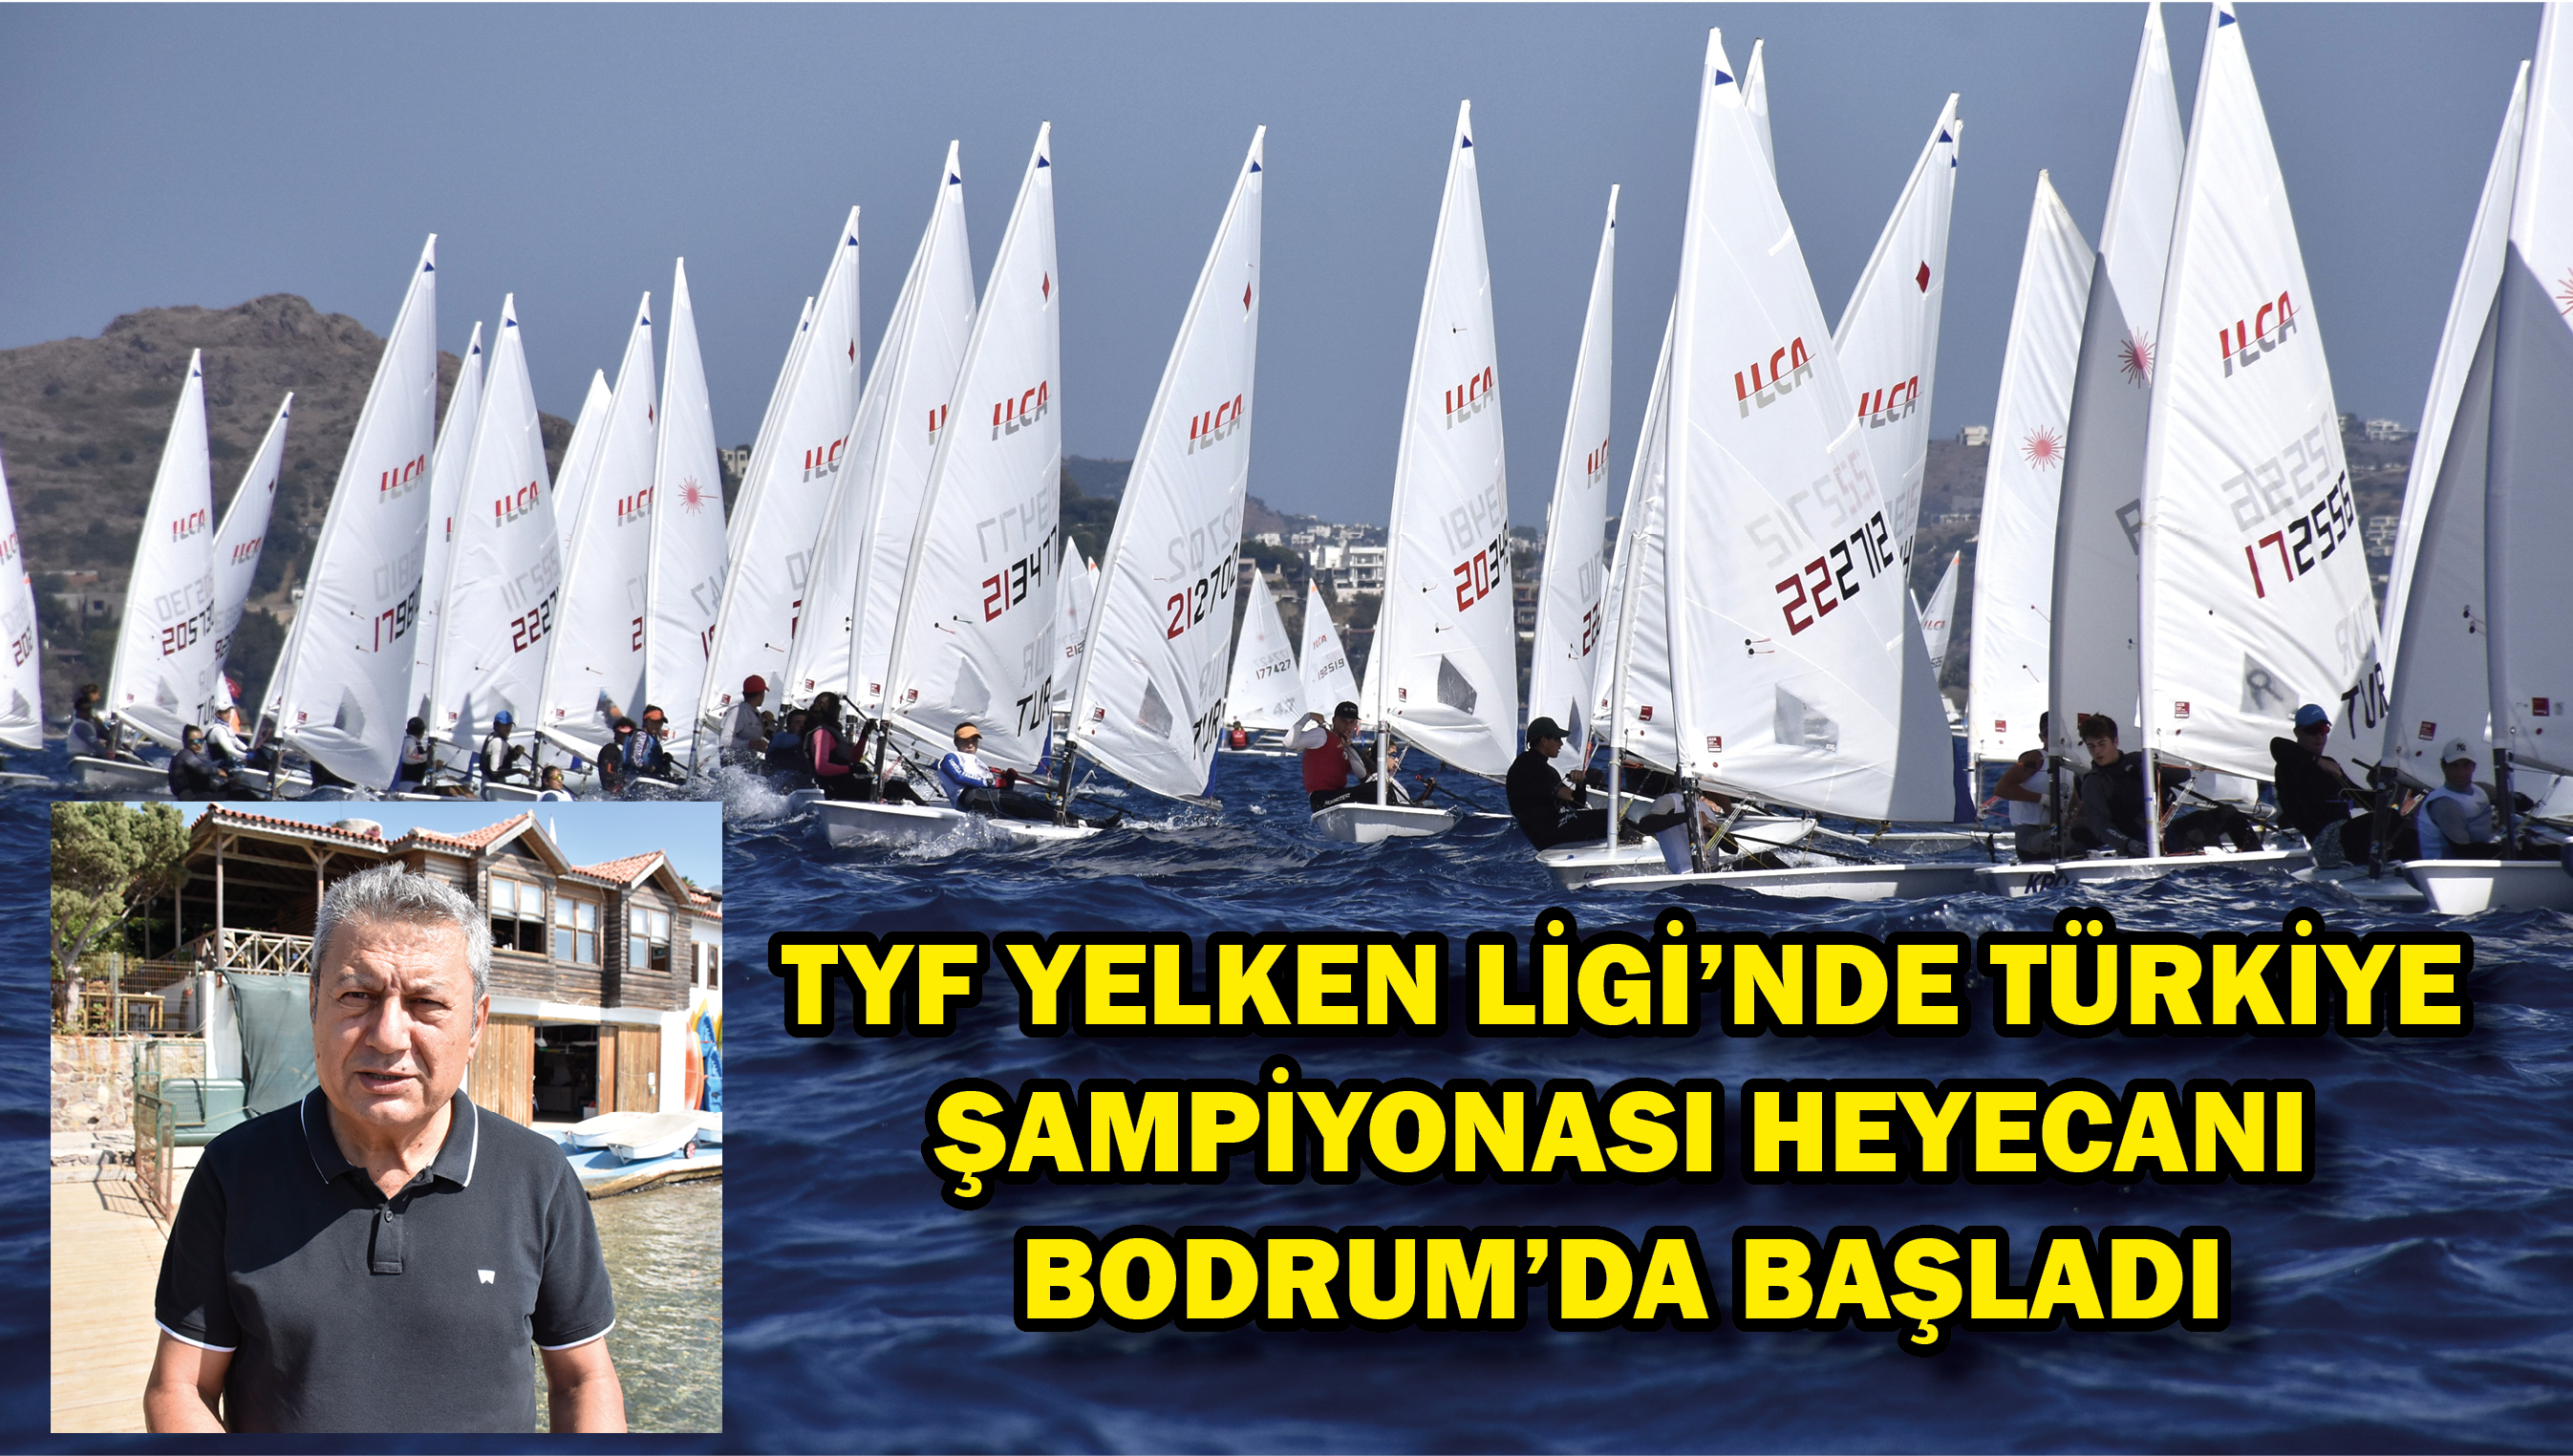 TYF Yelken Ligi'nde Türkiye Şampiyonası heyecanı Bodrum'da başladı